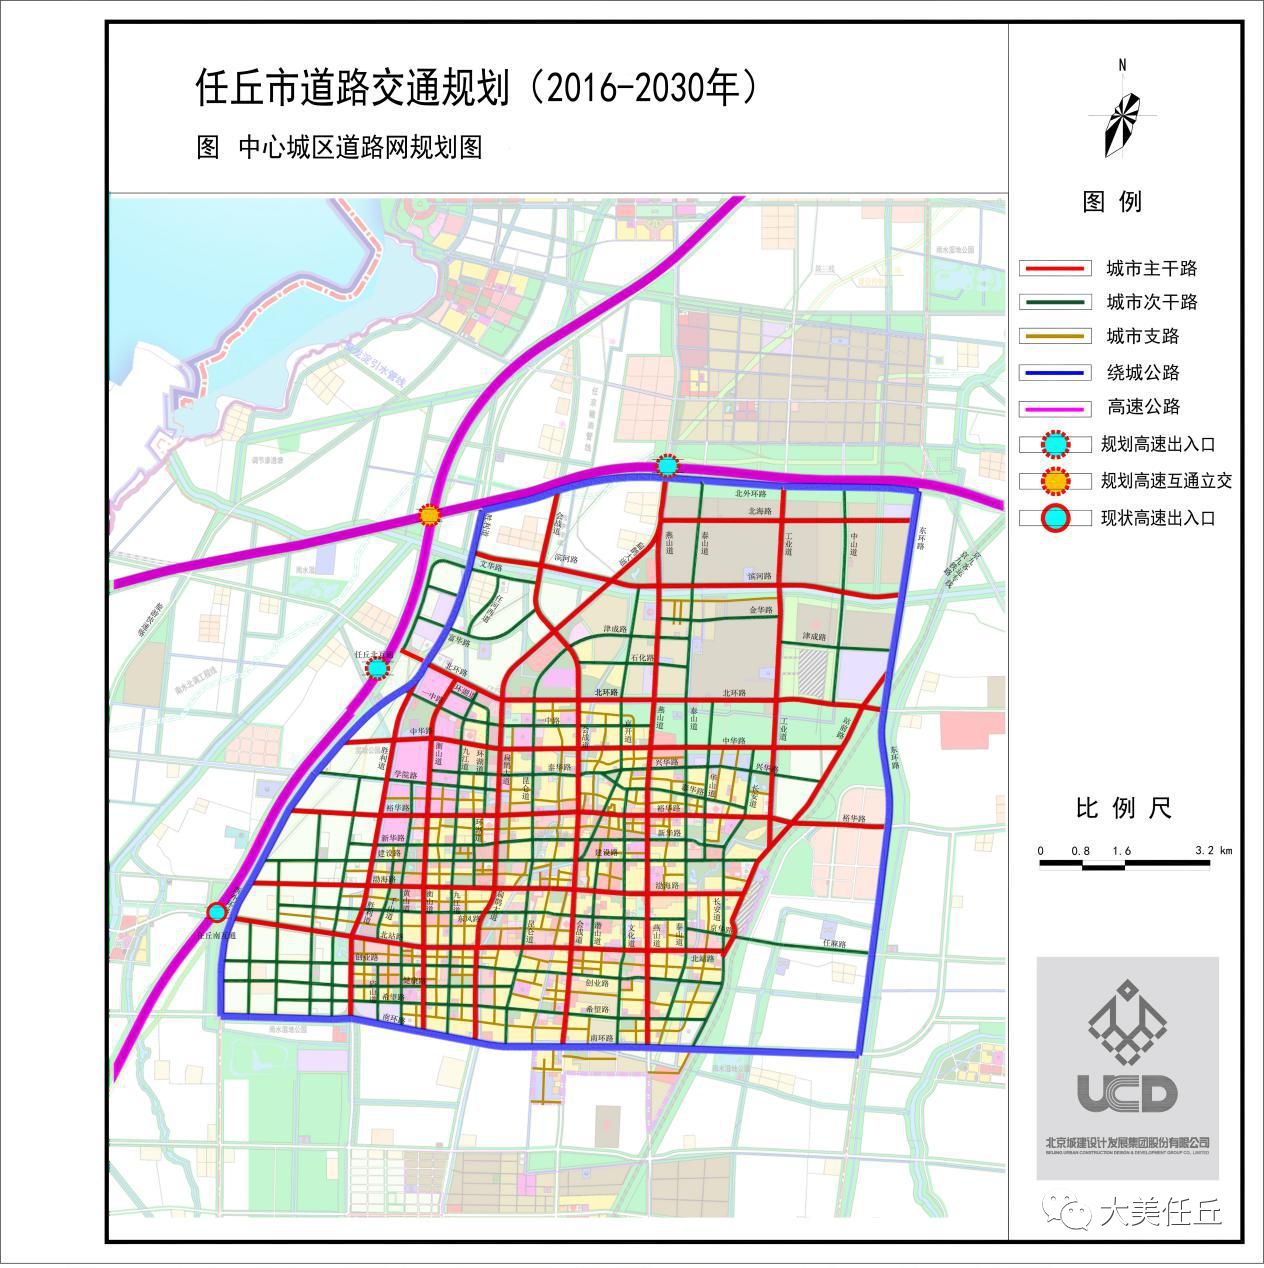 任丘市道路交通规划发布!(附规划图)